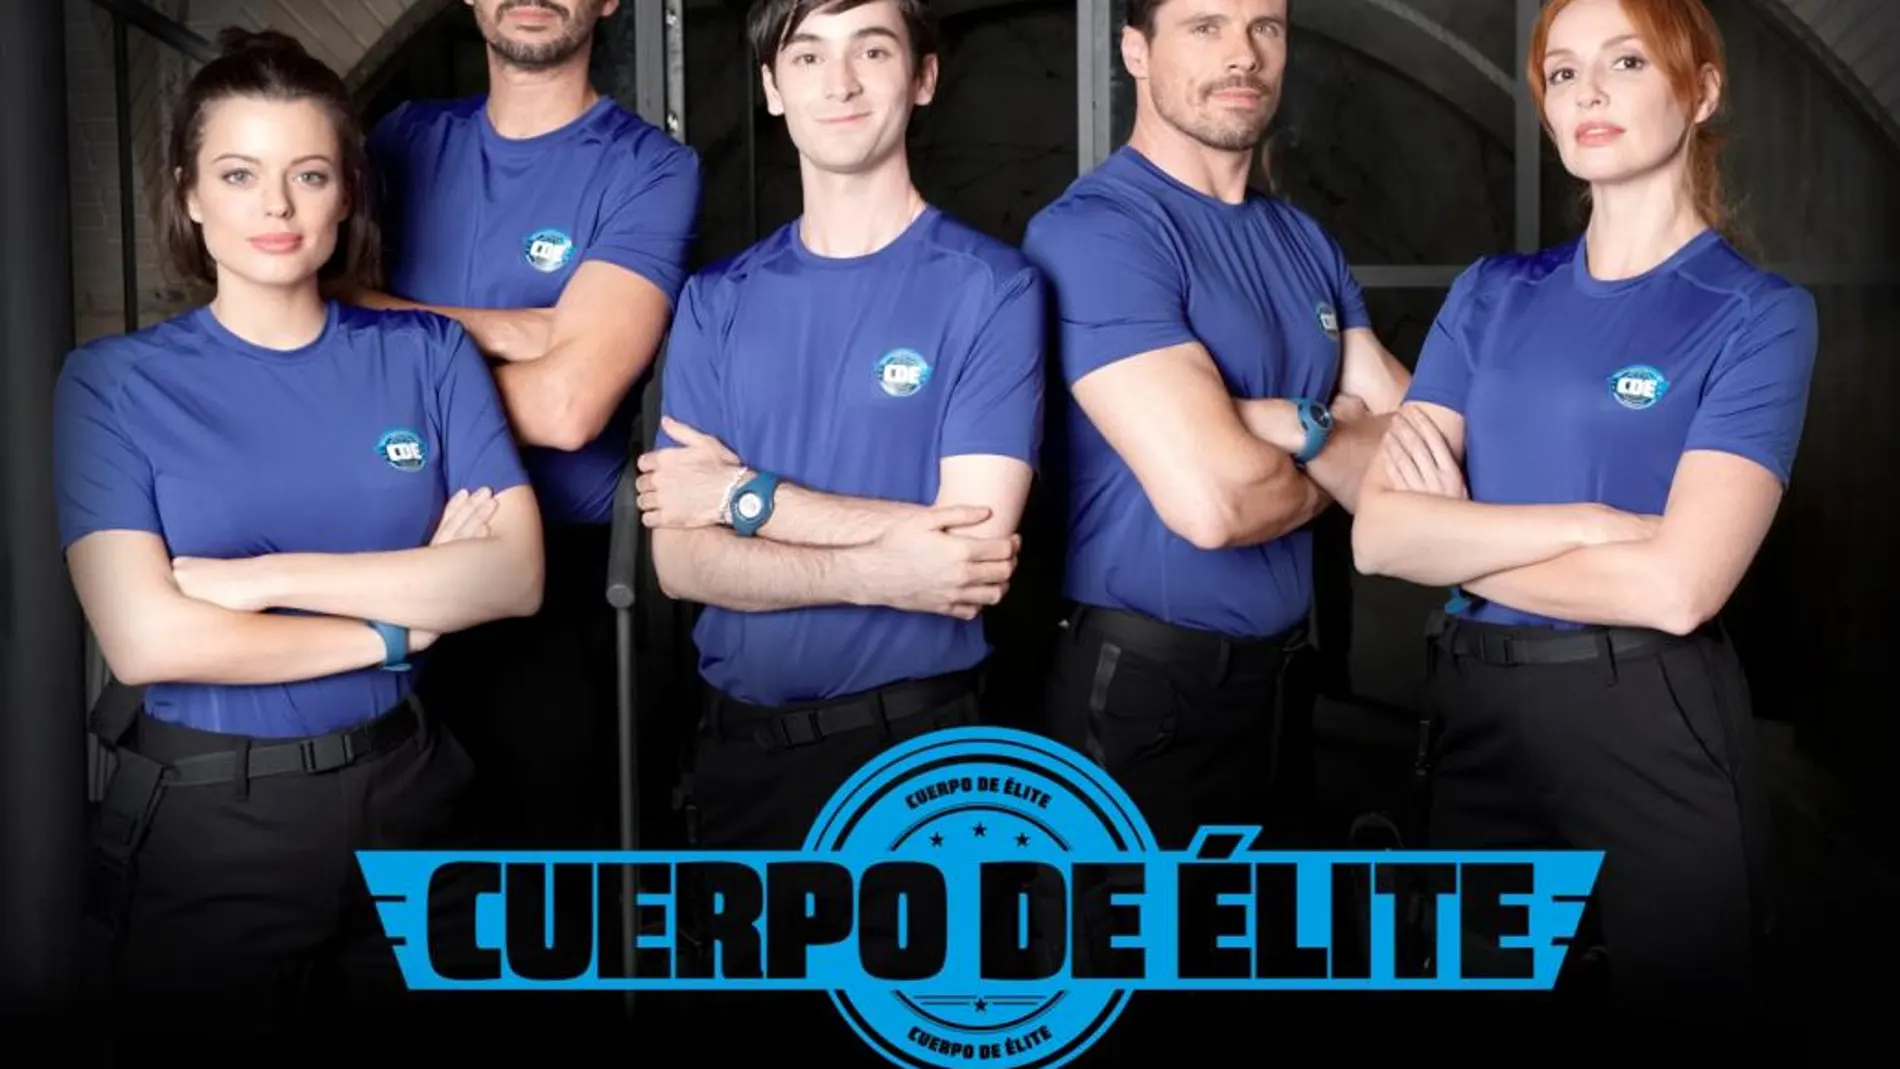 Los cinco agentes que formarán este disparatado cuerpo de élite en la nueva comedia de Antena 3